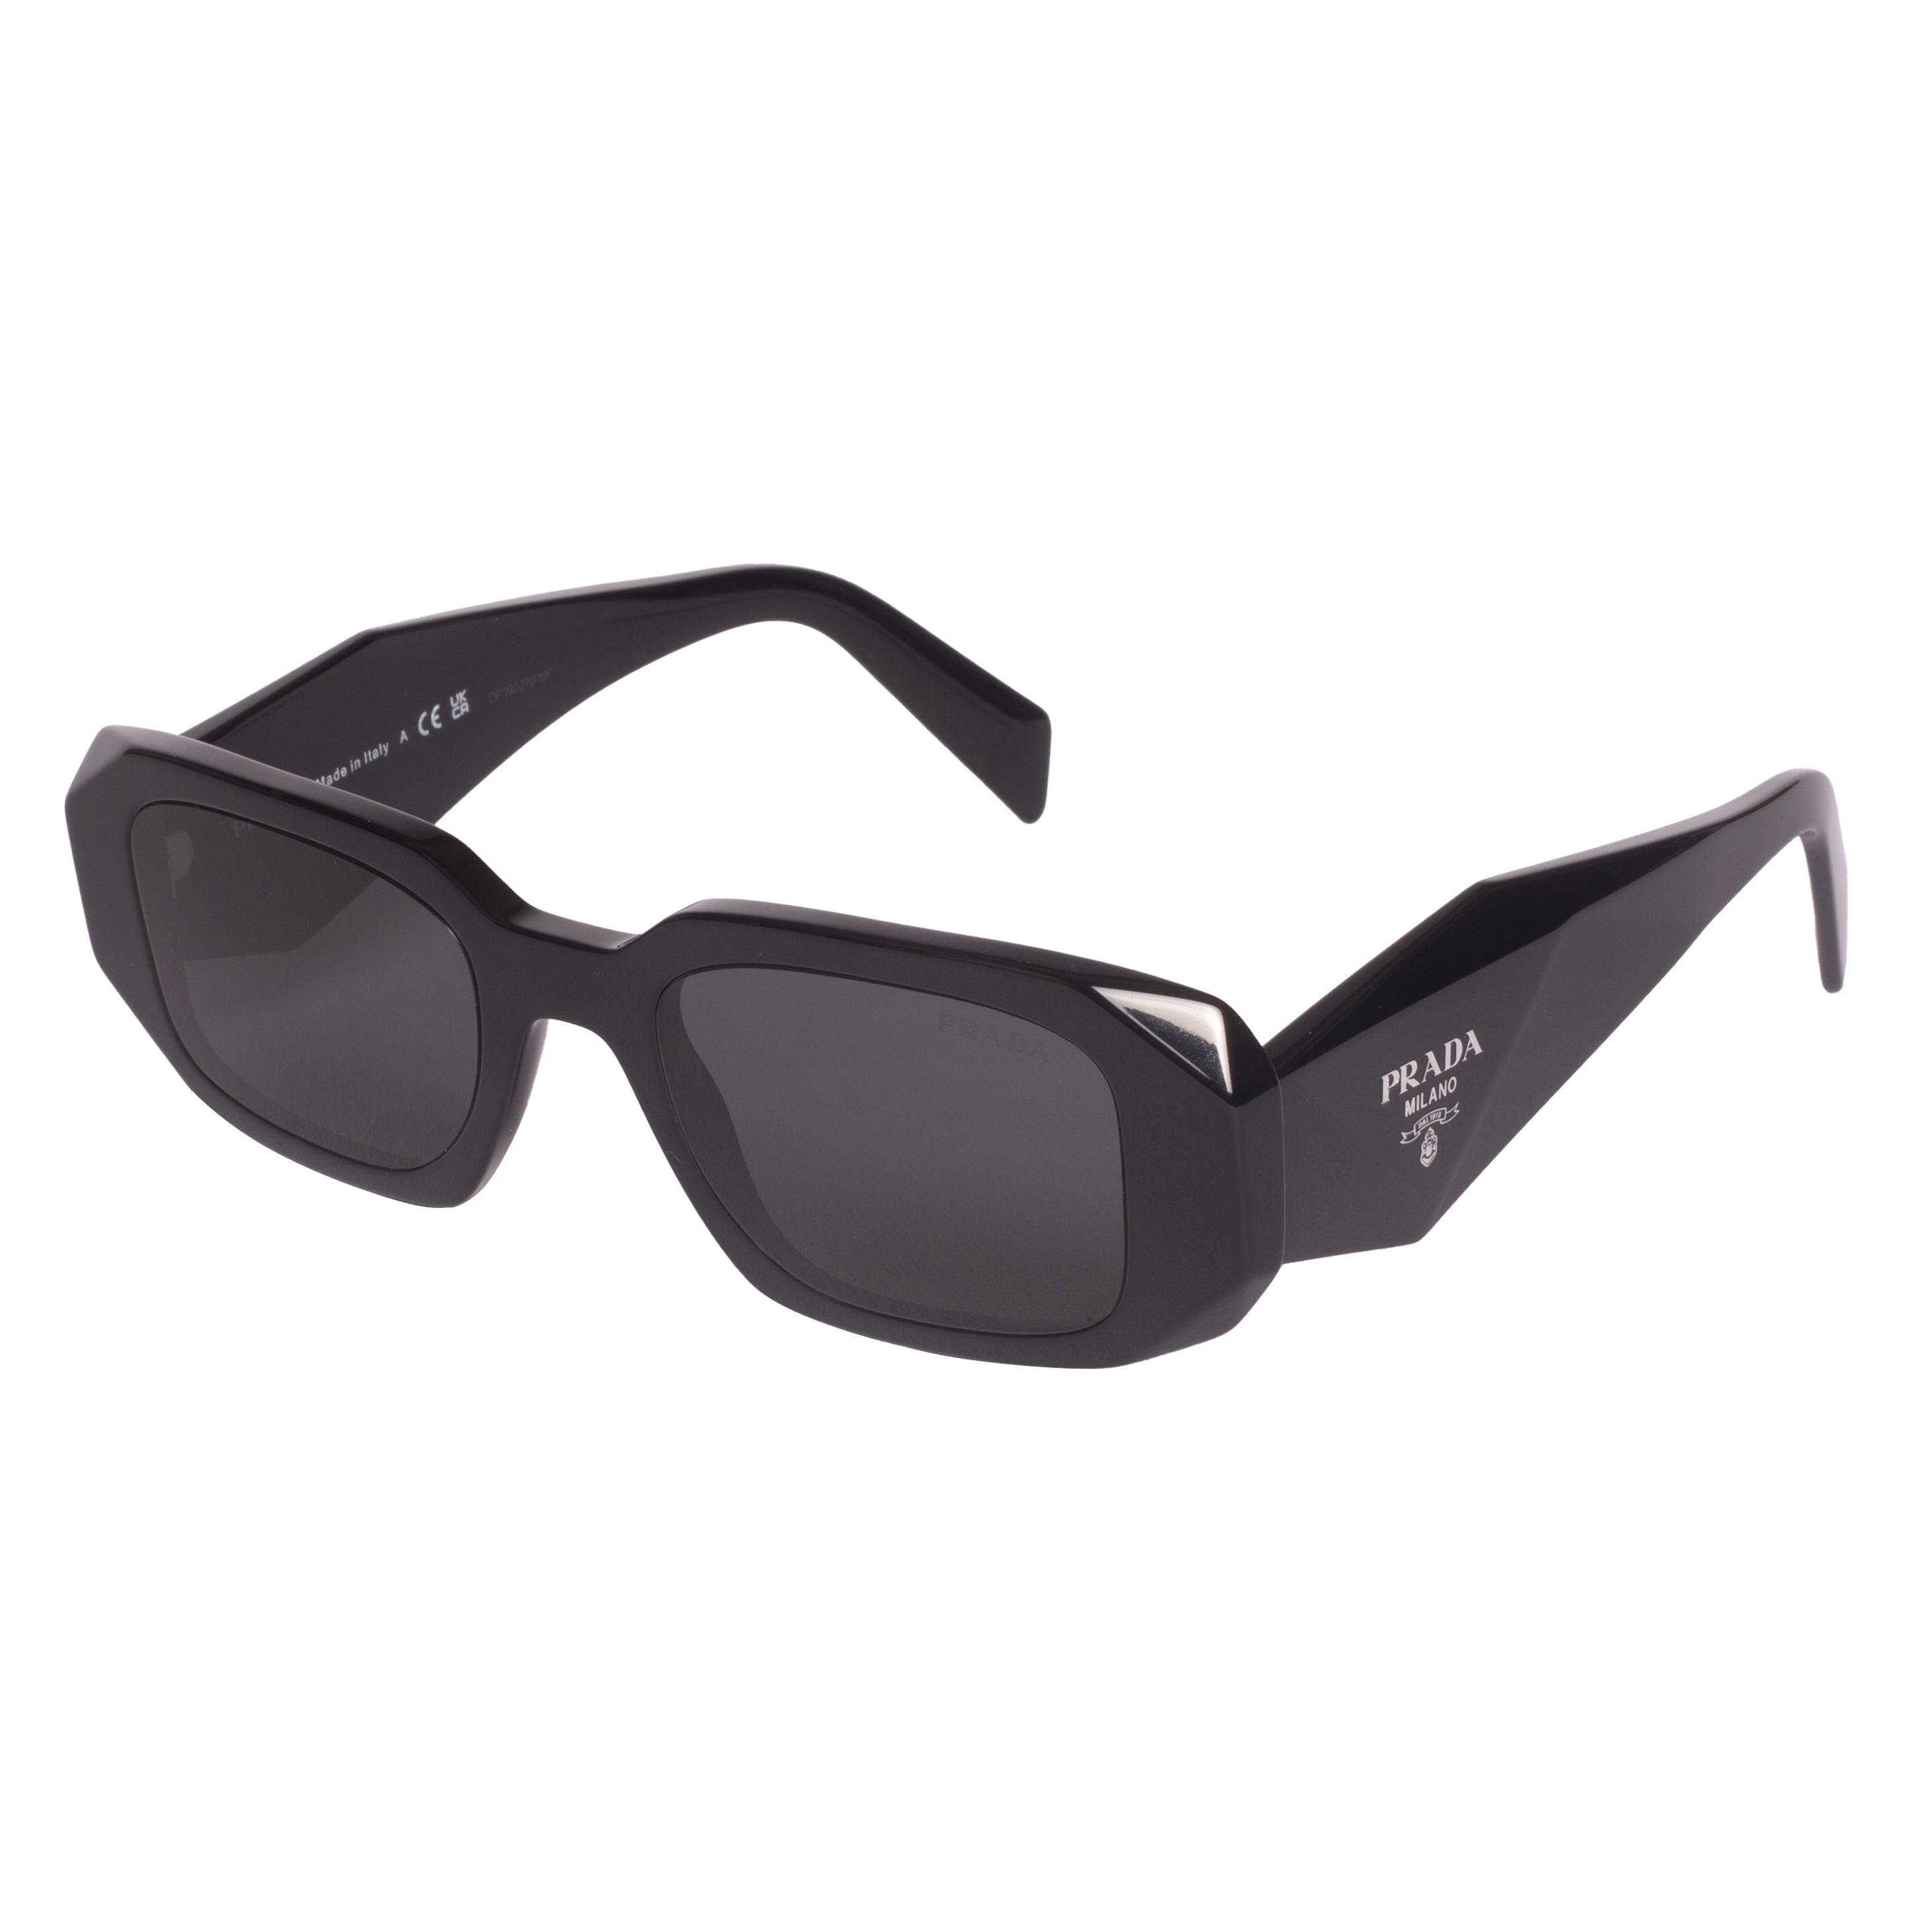 Prada-PR17WS-49-1AB5S0 Sunglasses - Premium Sunglasses from Prada - Just Rs. 36290! Shop now at Laxmi Opticians